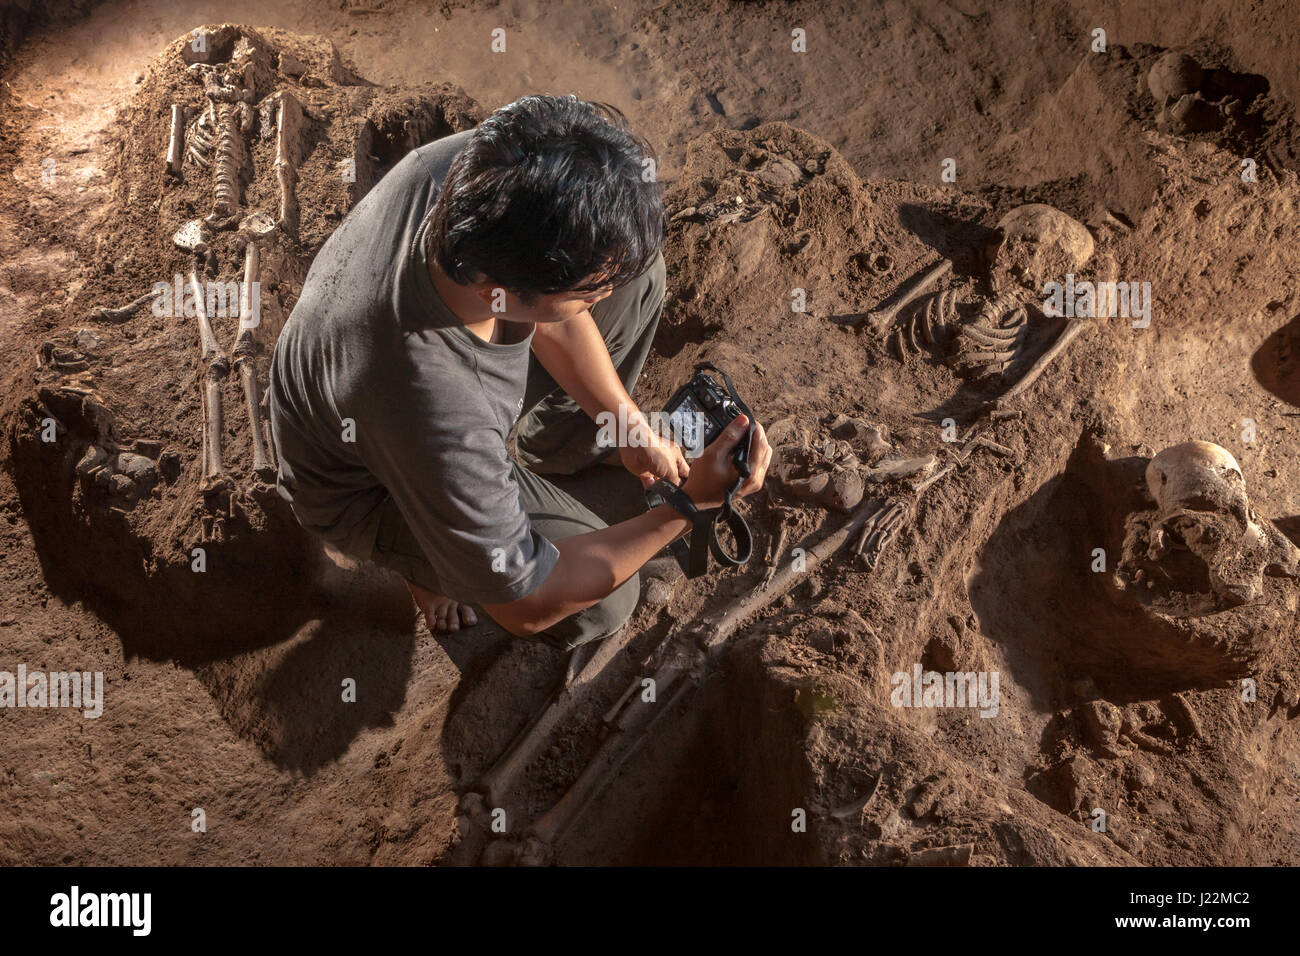 Un arqueólogo indonesio que toma fotos de los esqueletos homínidos prehistóricos en el sitio de excavación de Gua Harimau, Sumatra, Indonesia. Foto de stock